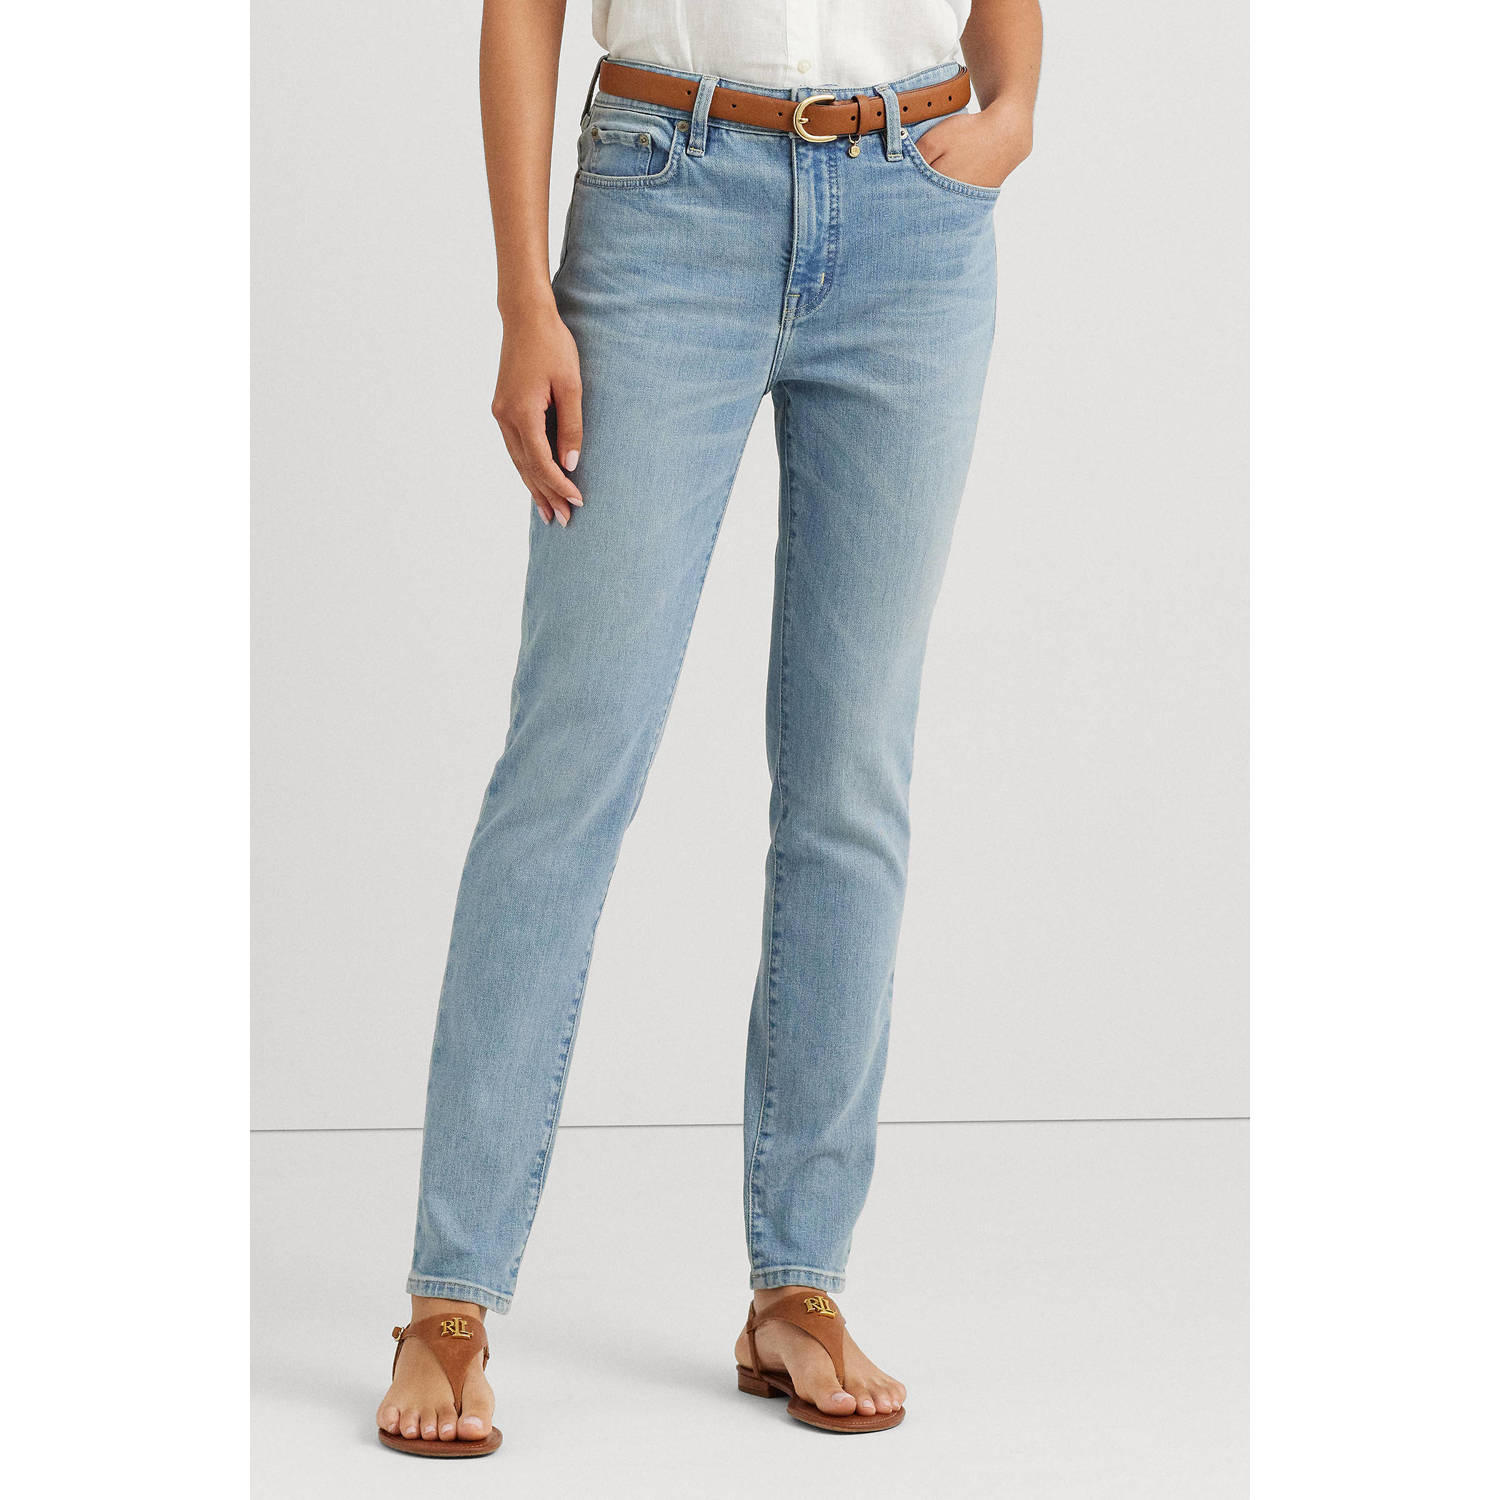 Lauren Ralph Lauren high waist skinny jeans light blue denim